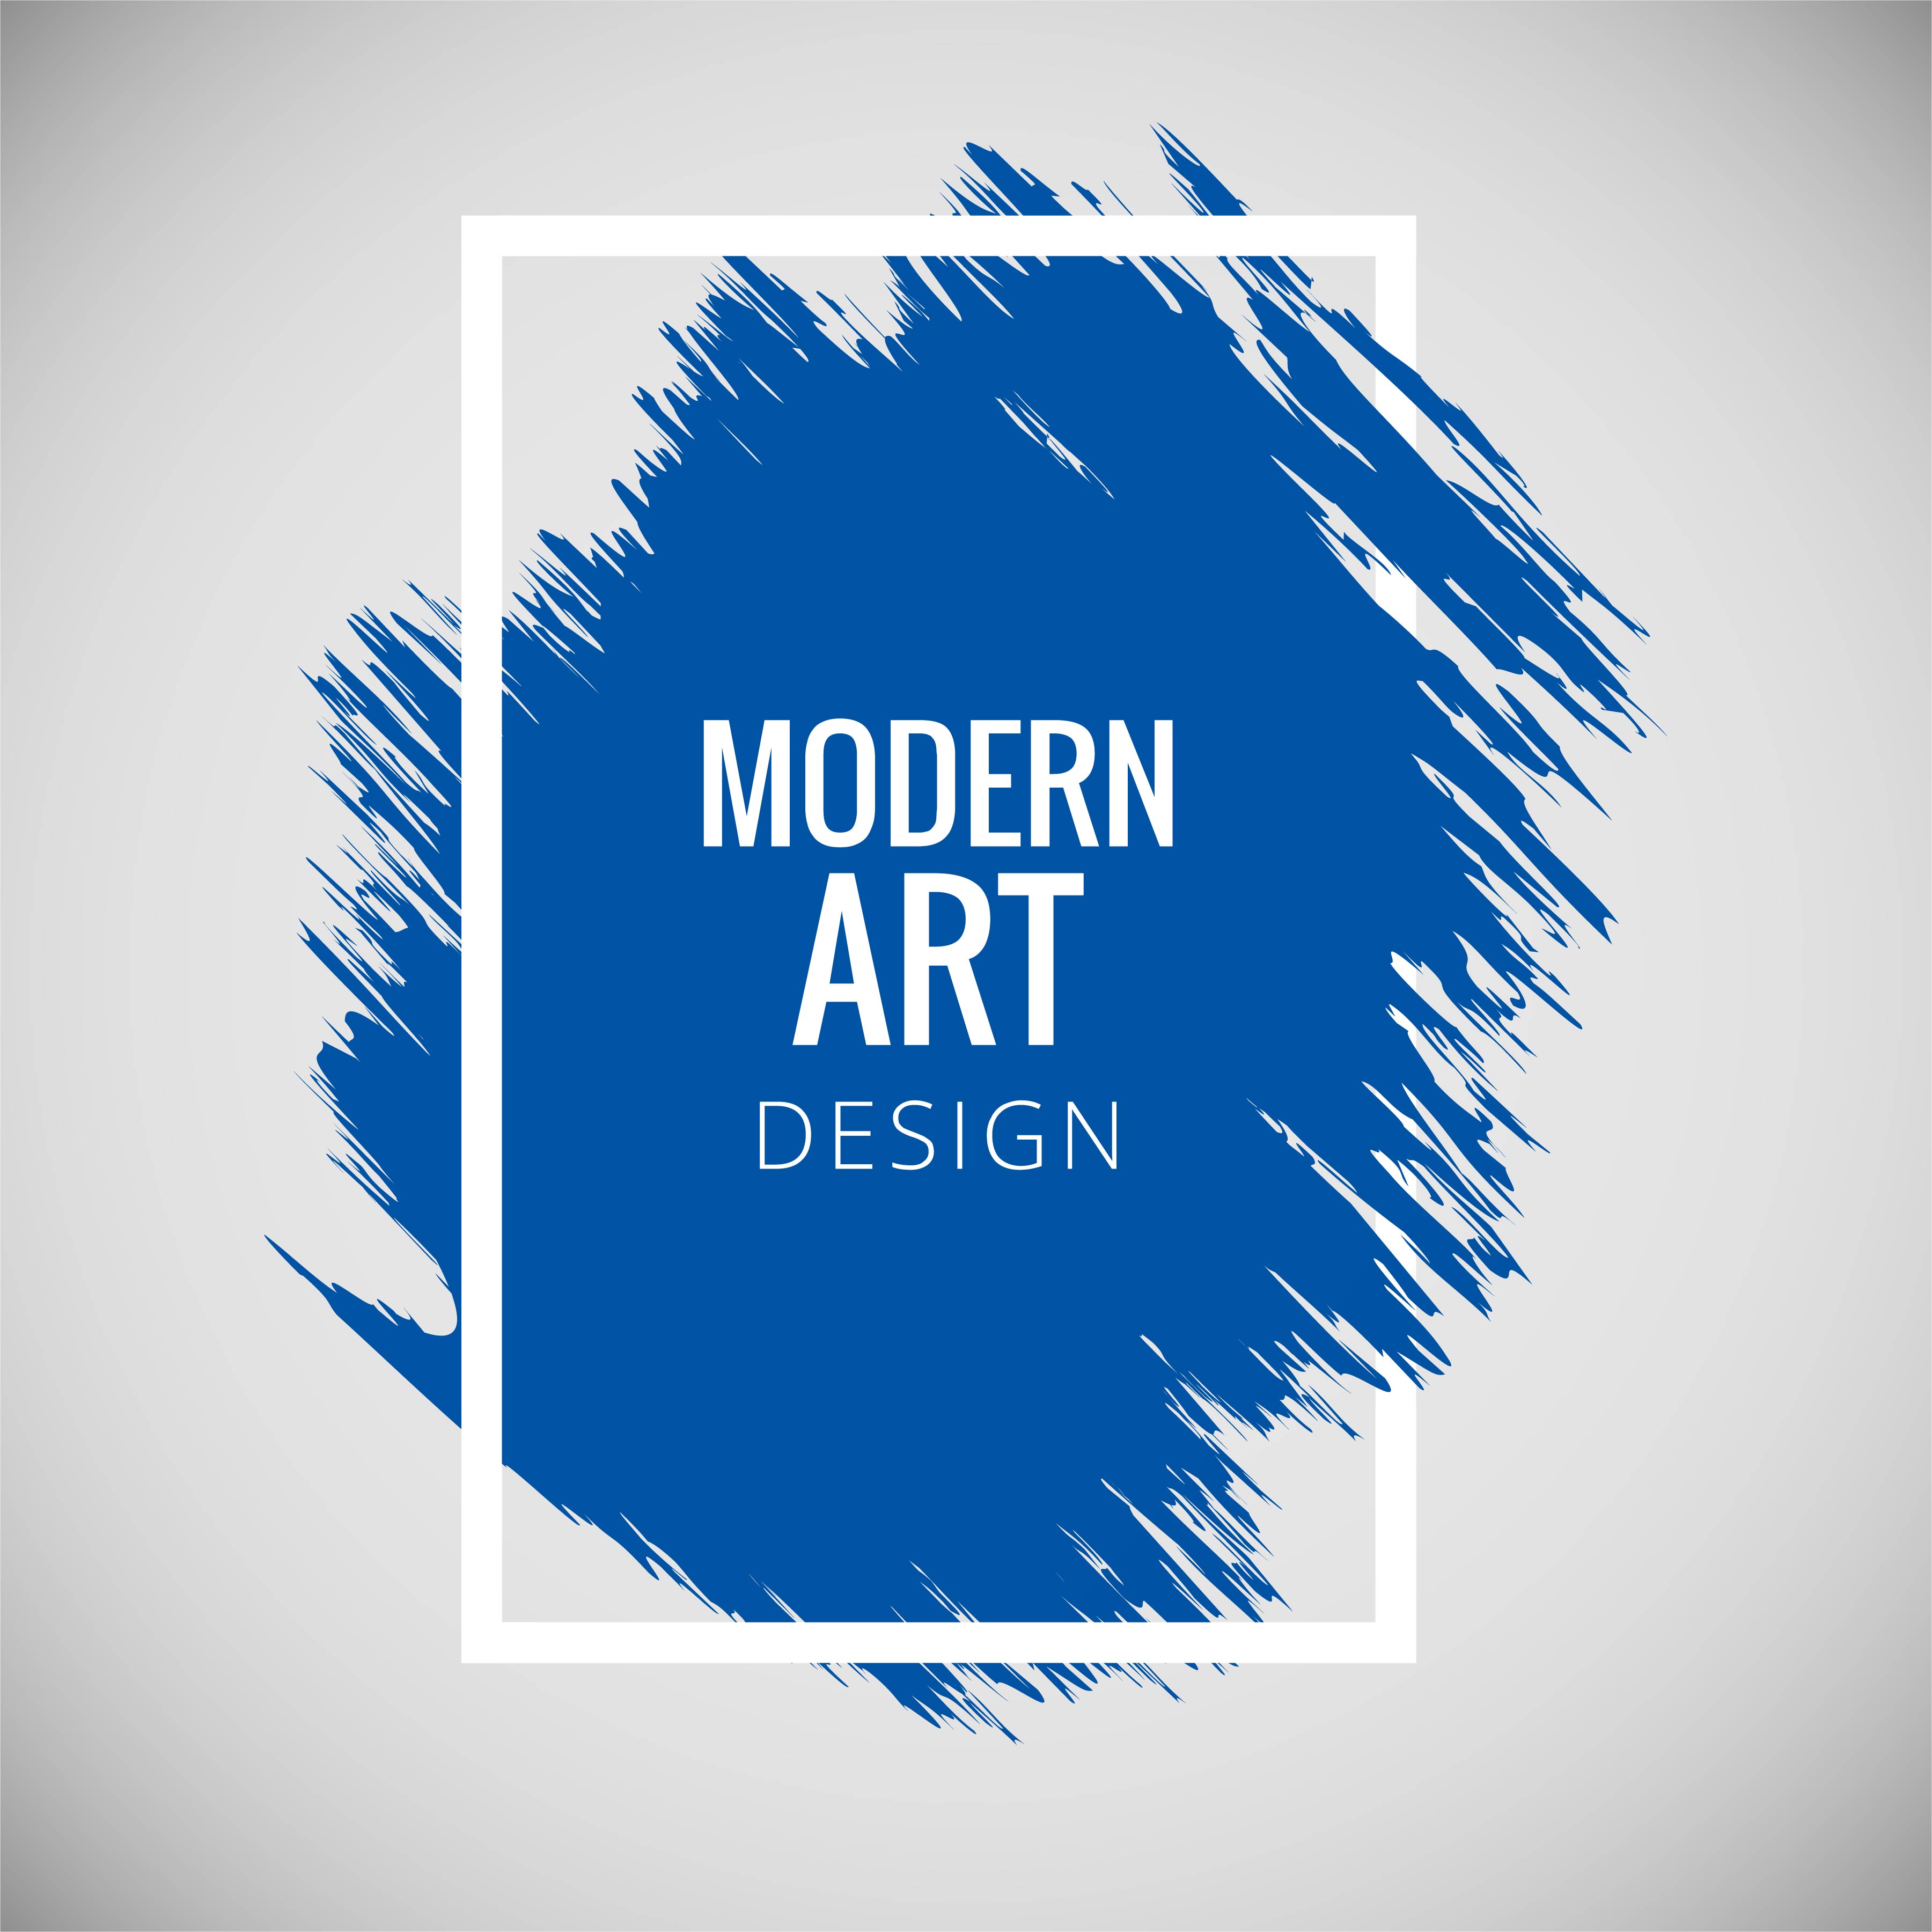 Modern art grunge background vector - Download Free ...